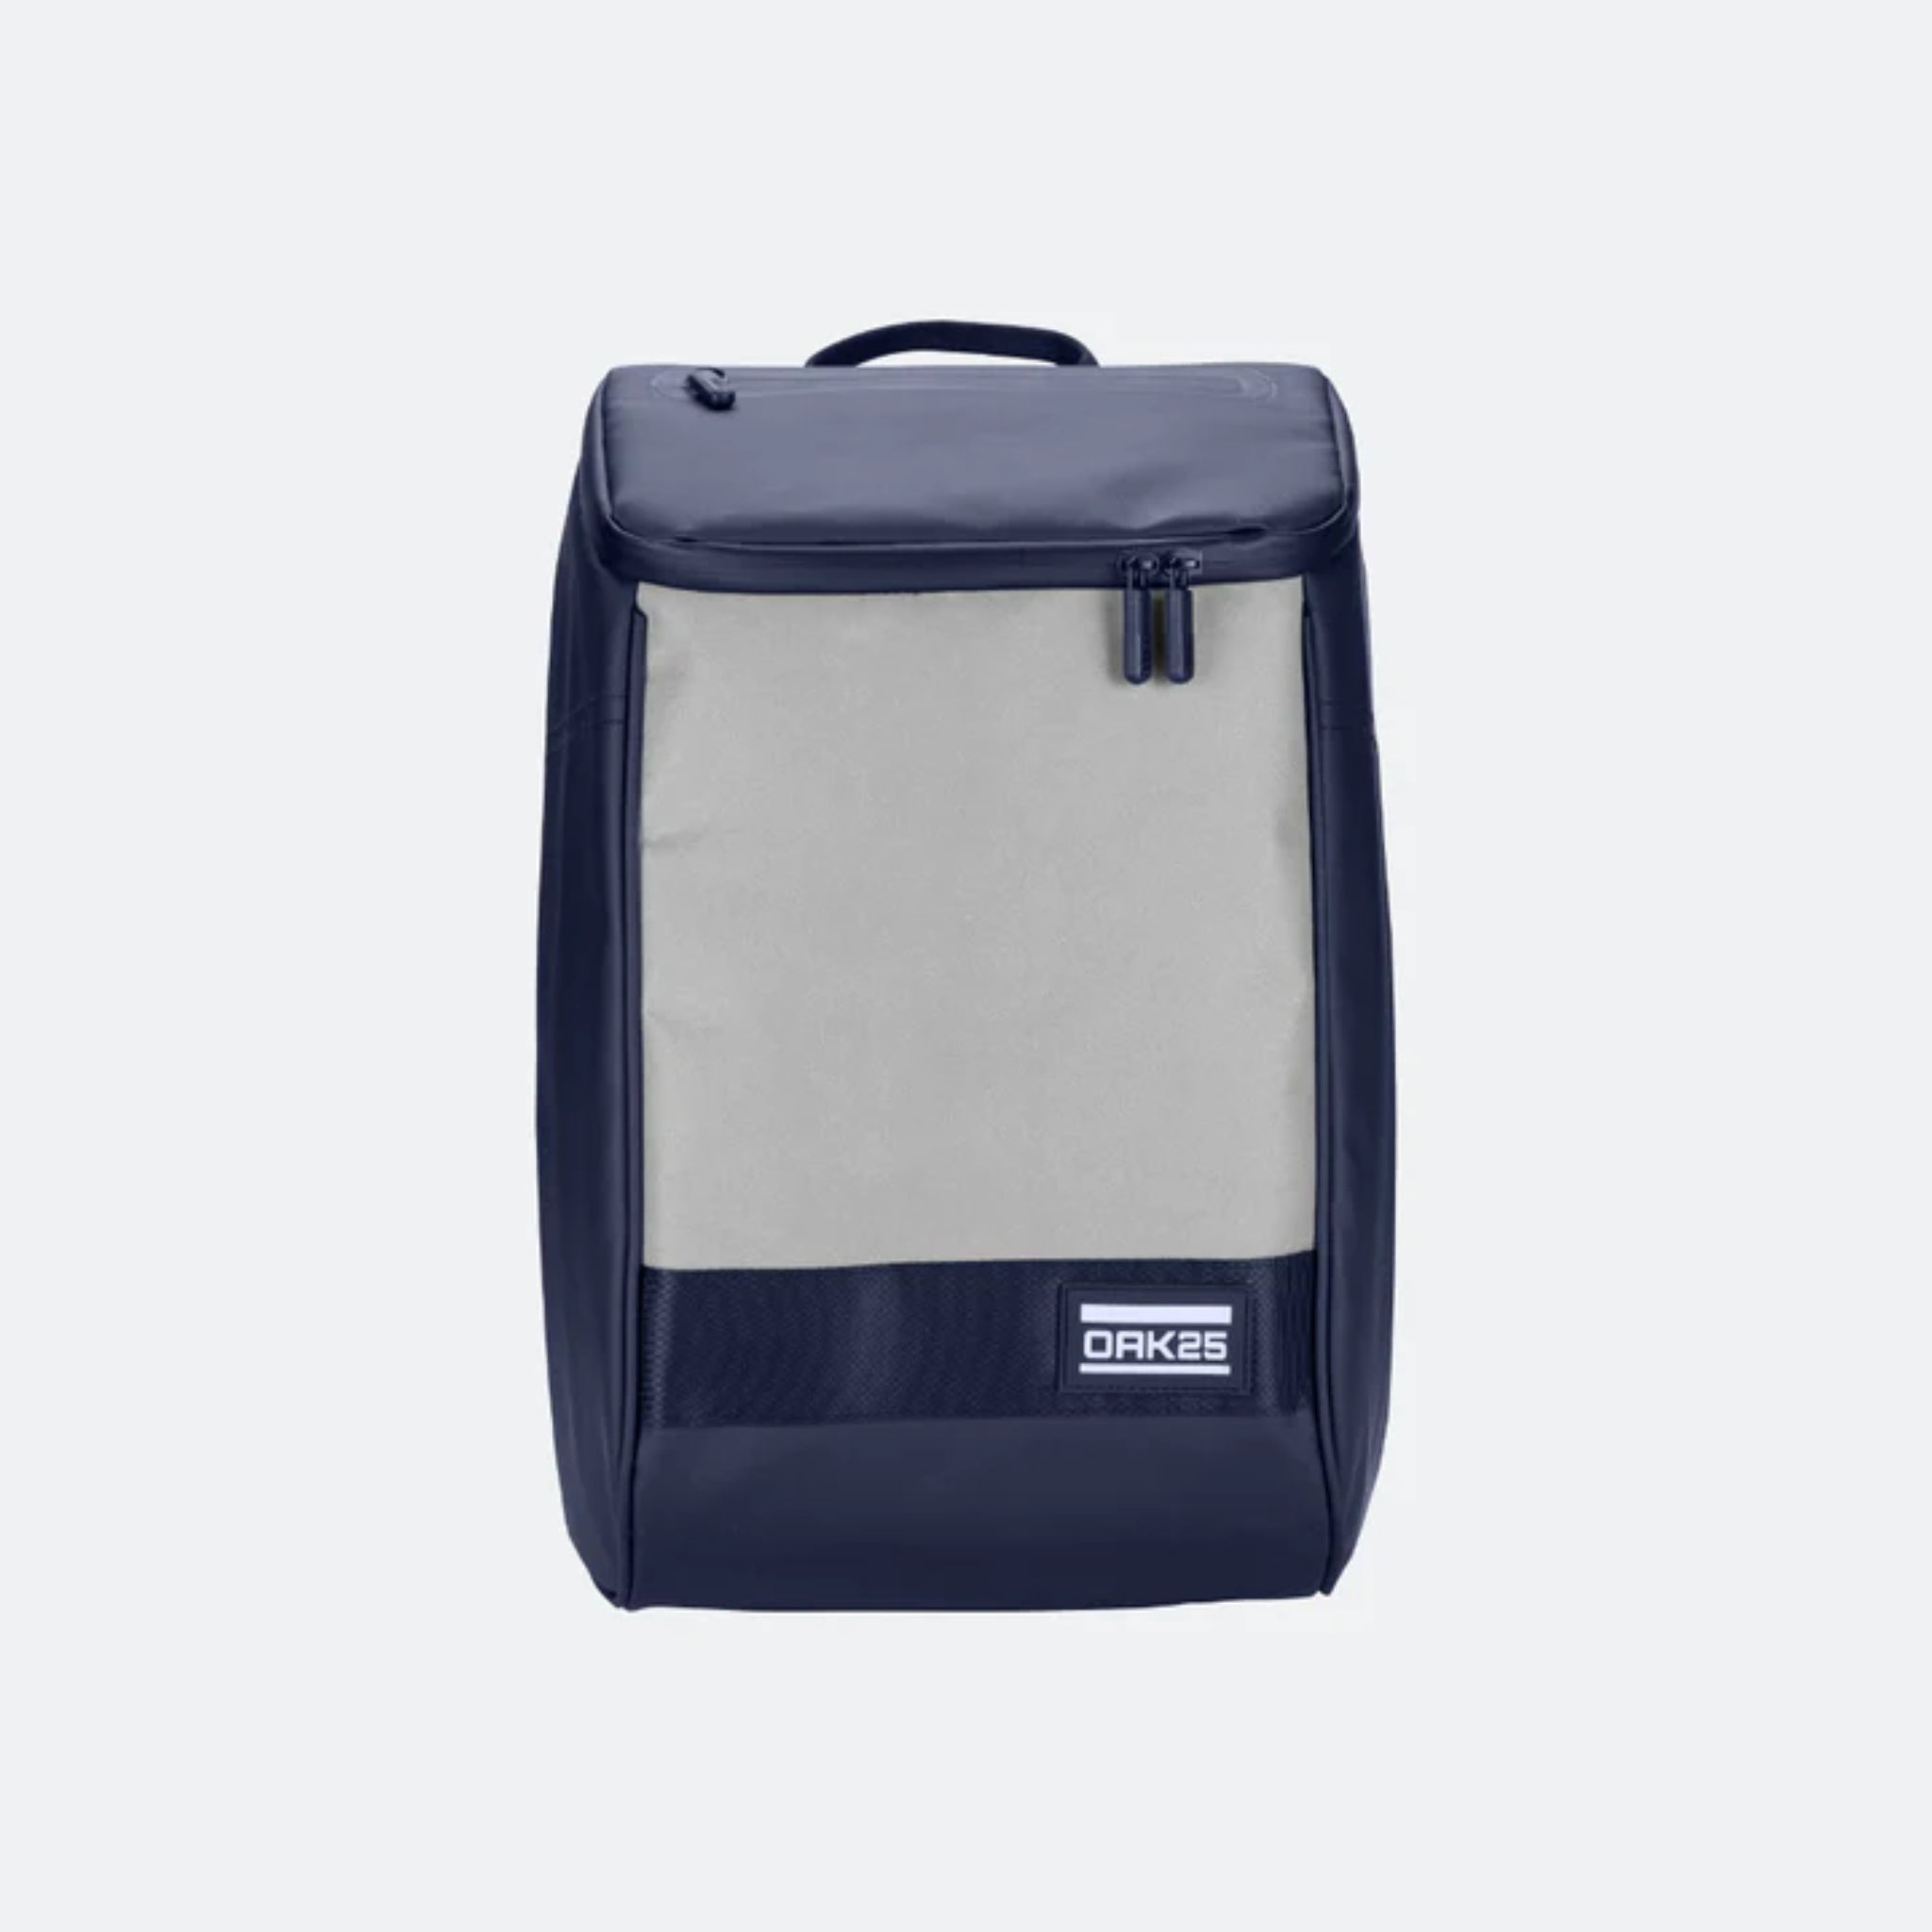 OAK25 reflektierender Rucksack "Daybag"